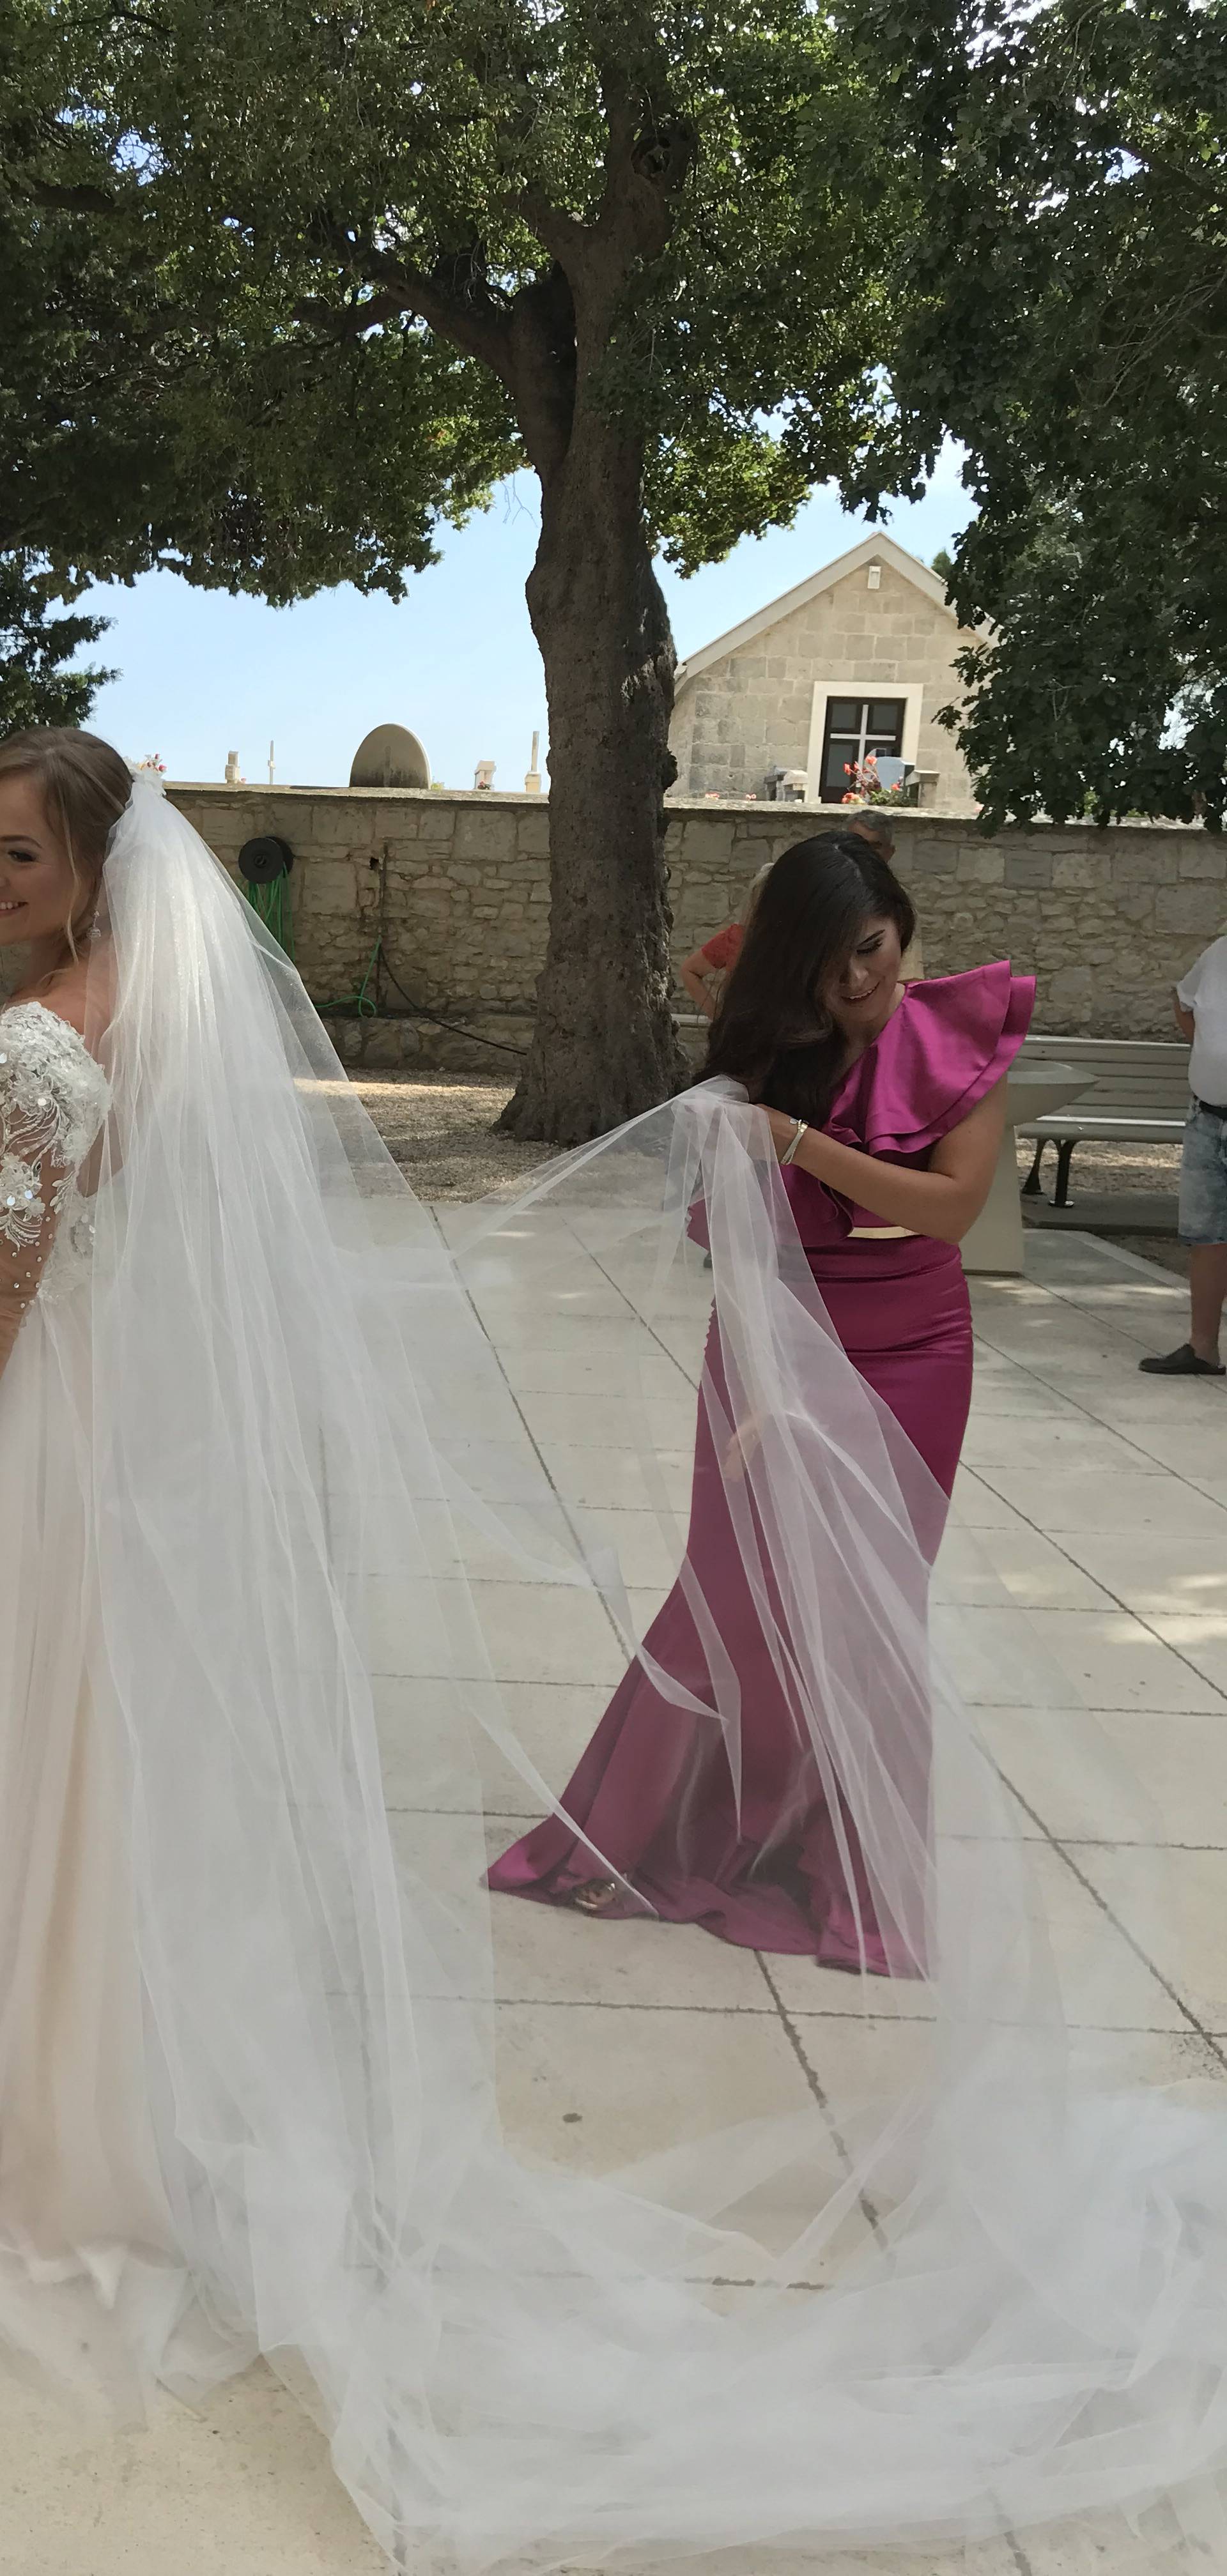 Bulićeva kći Katja se udala: 'Ponosan sam kao i svaki otac'